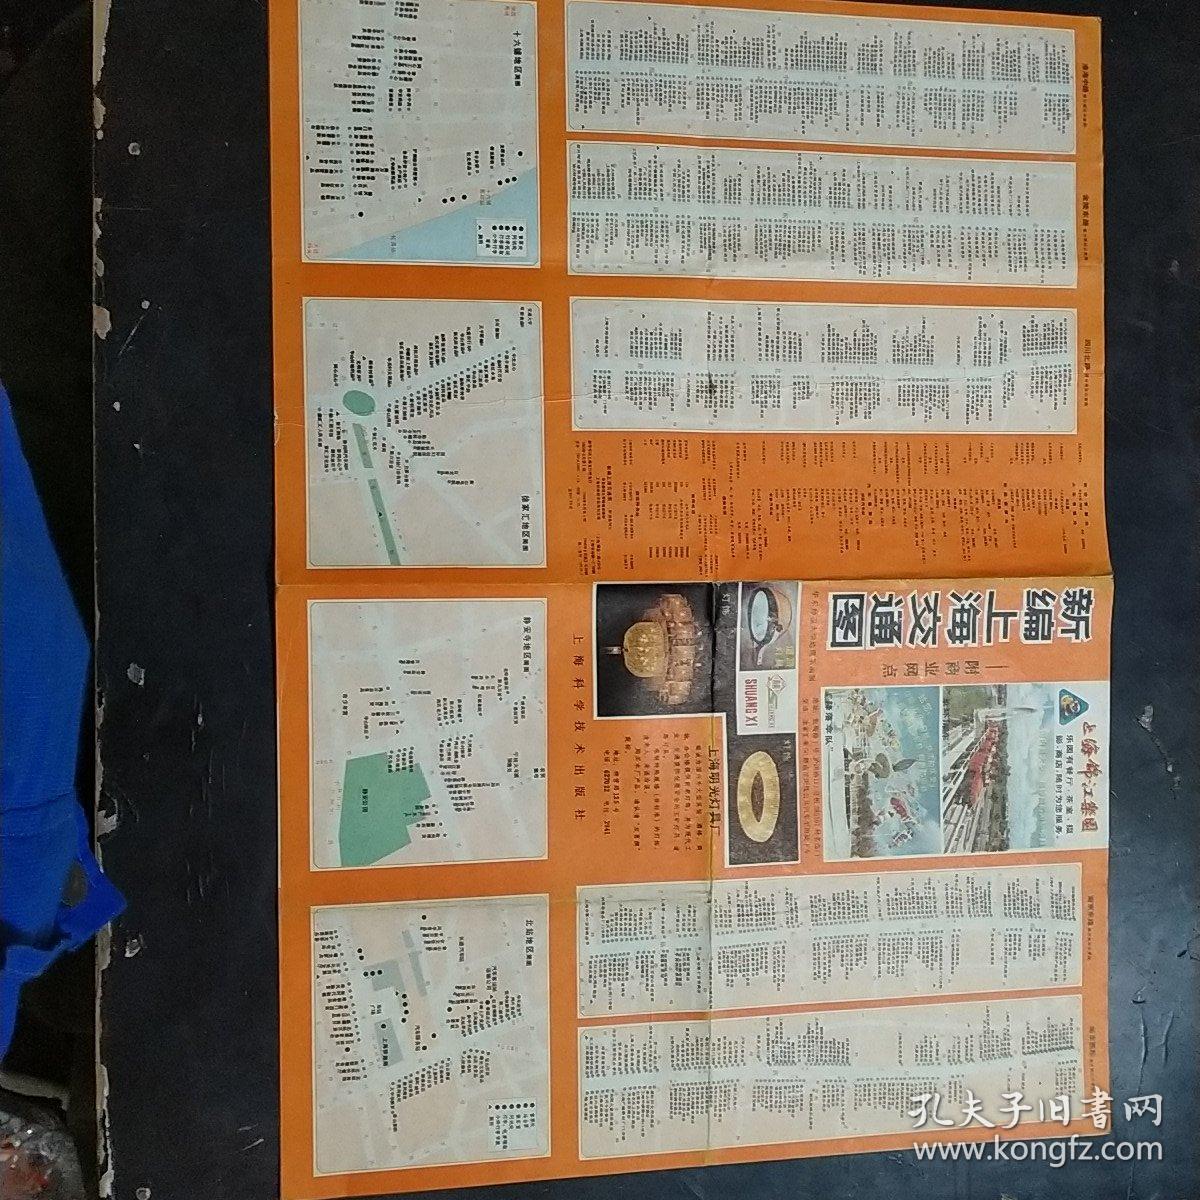 新编上海交通图1986年